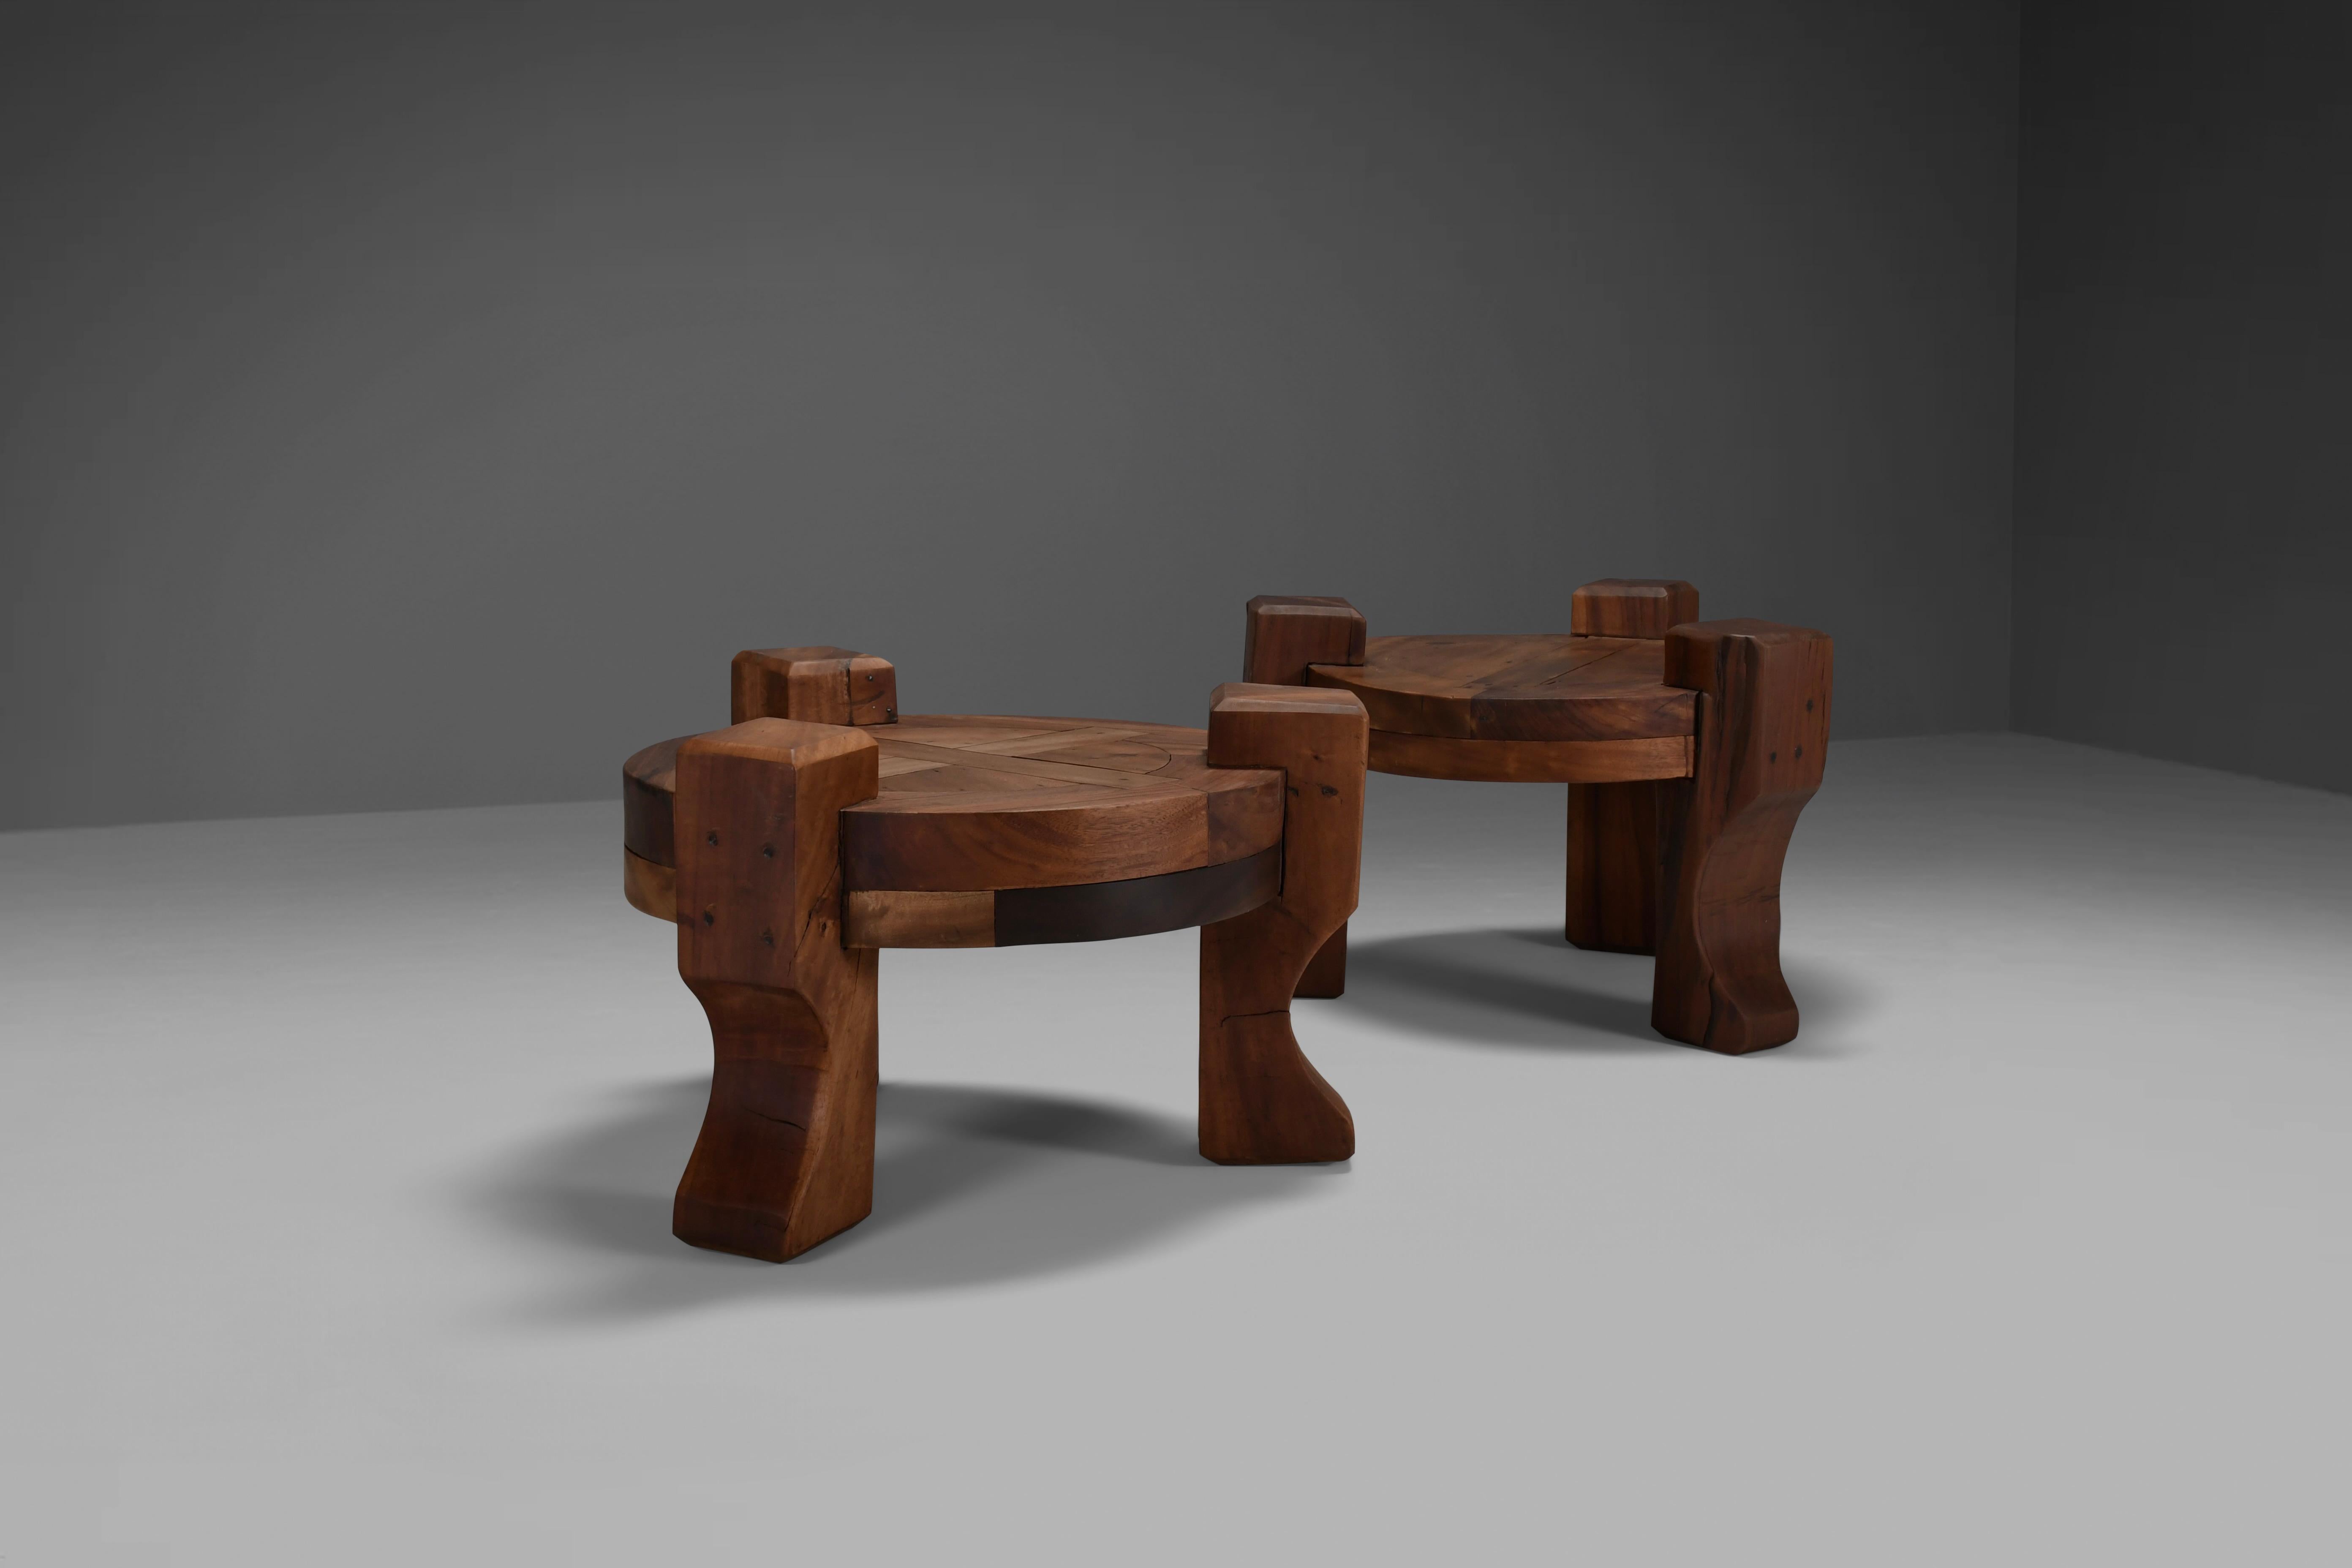 Set von schönen rustikalen Endtischen in sehr gutem Zustand.

Diese Tische wurden in den 1960er Jahren in Brasilien hergestellt.

Sie werden aus massivem Tropenholz hergestellt und sind extrem schwer.

Diese Tische sind ein Fest der Einfachheit und